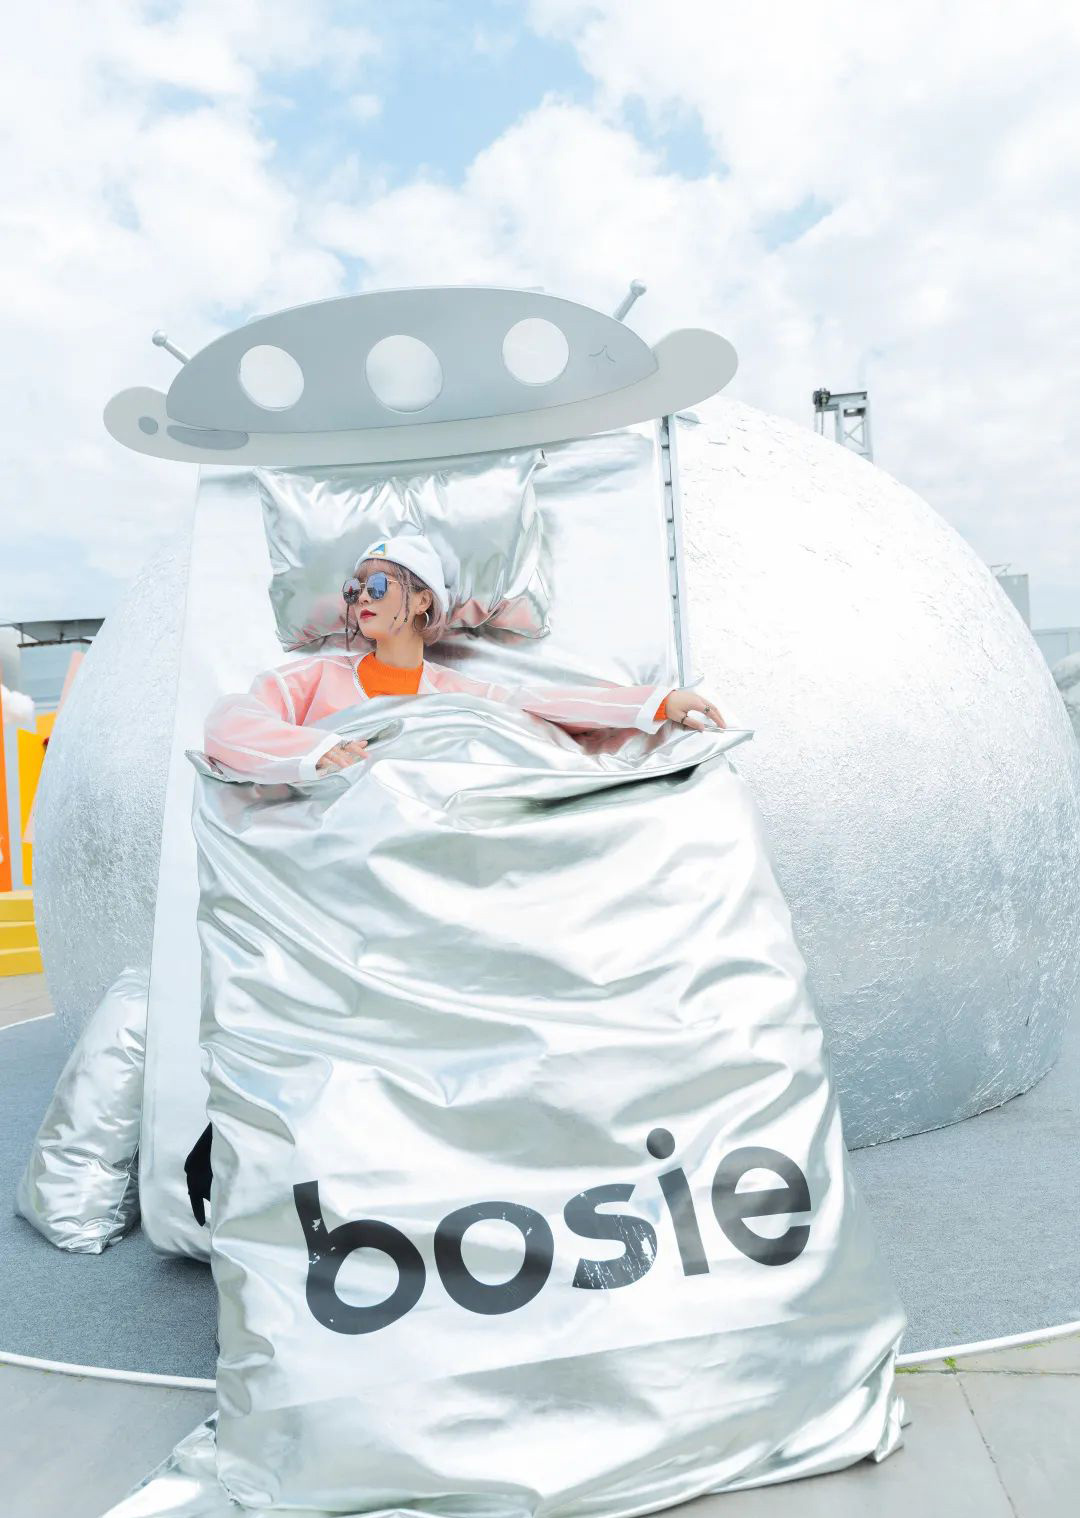 bosie空间站星球艺术展